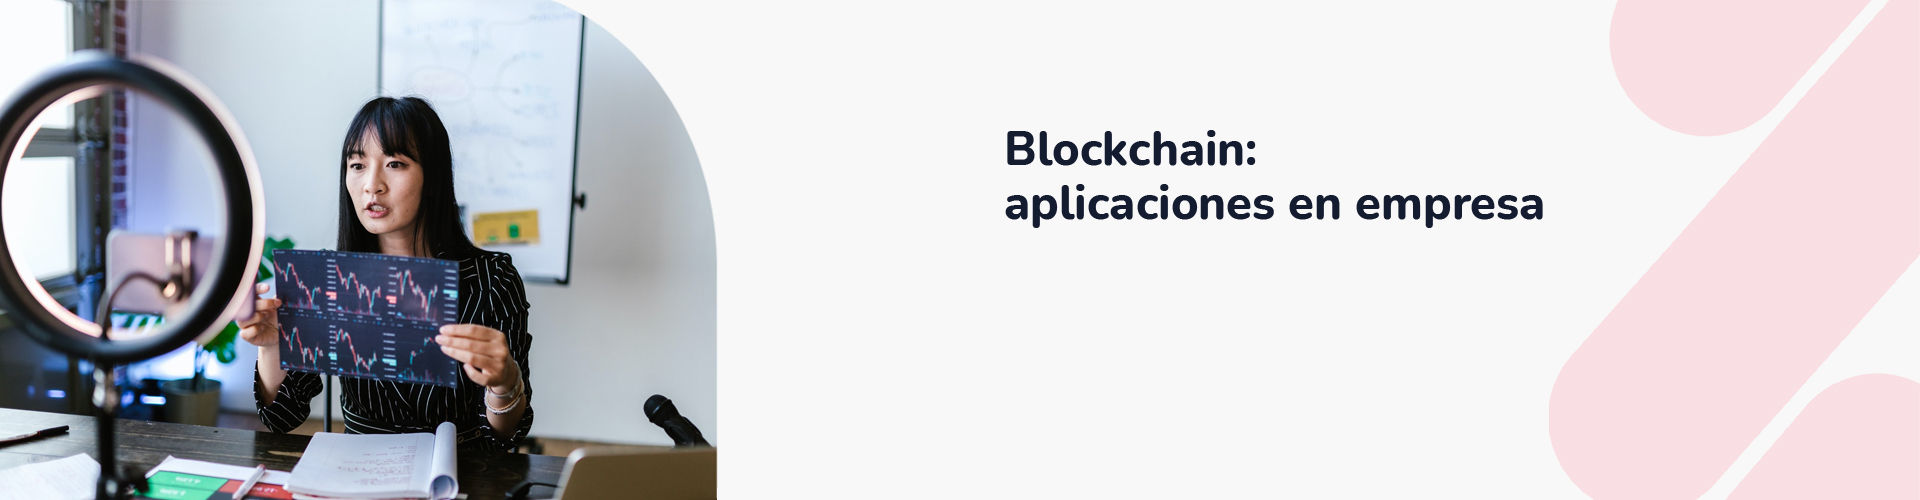 Blockchain_ aplicaciones en empresa